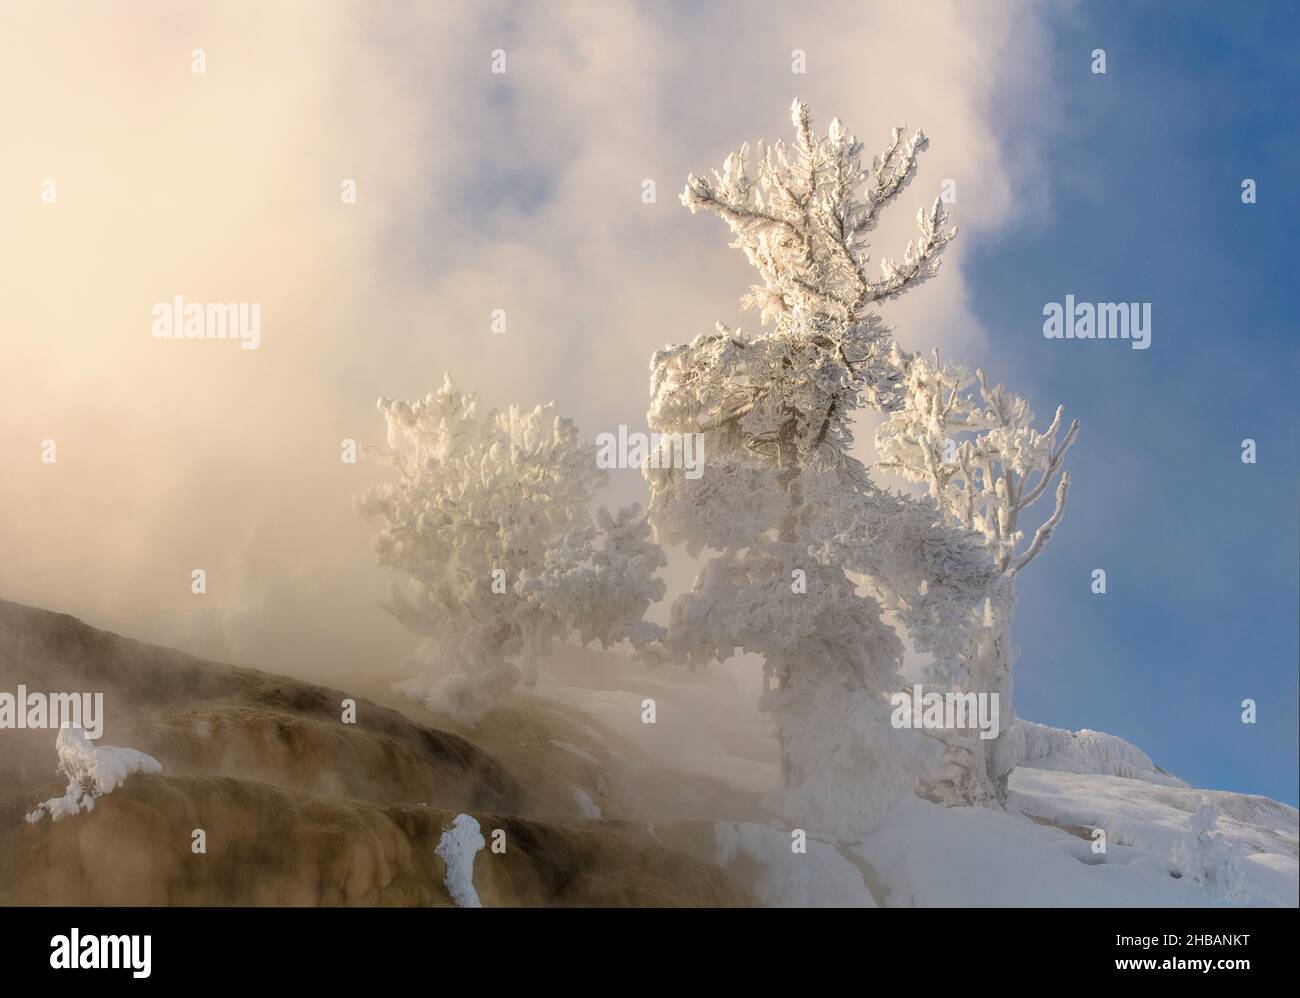 Albero ricoperto di ghiaccio vicino a palette Spring, Mammoth Hot Springs, Yellowstone National Park, Wyoming, Stati Uniti d'America. Il ghiaccio Rime si forma quando le goccioline di liquido dell'acqua sovrraffreddata congelano sulle superfici. Una versione unica e ottimizzata di un'immagine di NPS Ranger JW Frank; Credit: NPS/Jacob W. Frank Foto Stock